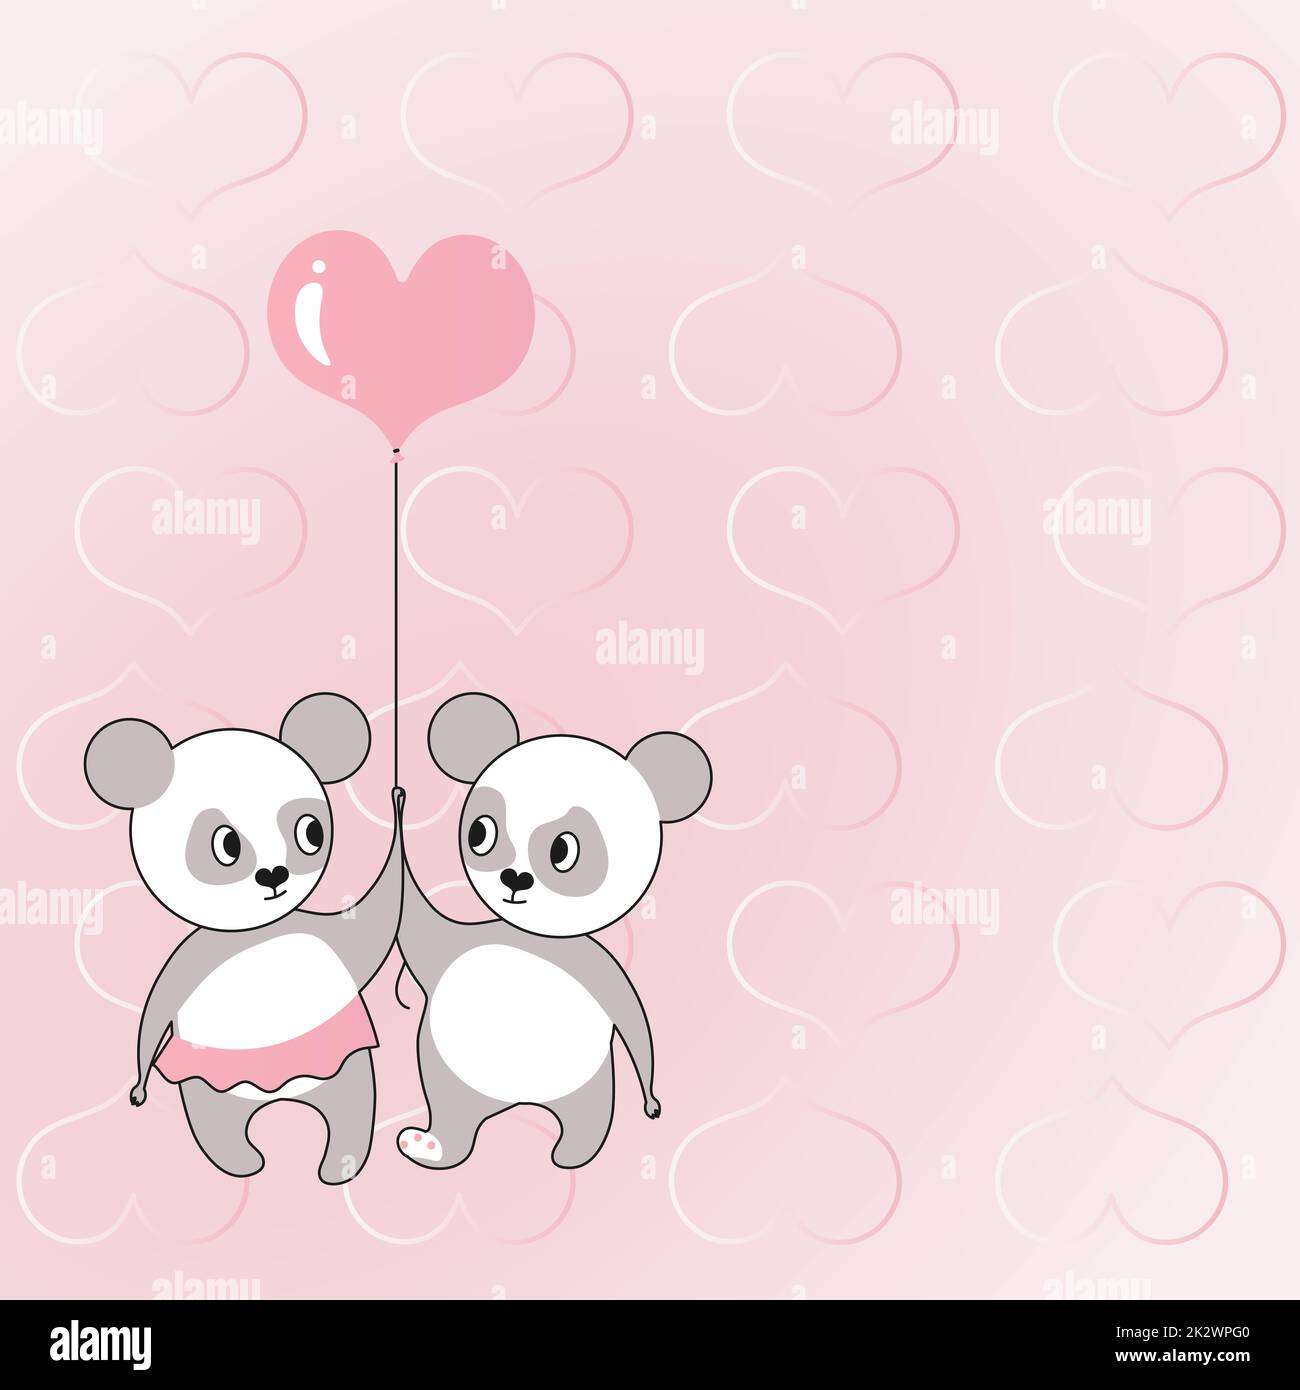 Zwei Bären, die einen herzförmigen Ballon halten, mit Herzen im Hintergrund zeigen Liebe und Harmonie. Teddybär repräsentiert leidenschaftliches Paar mit Liebeszielen. Stockfoto